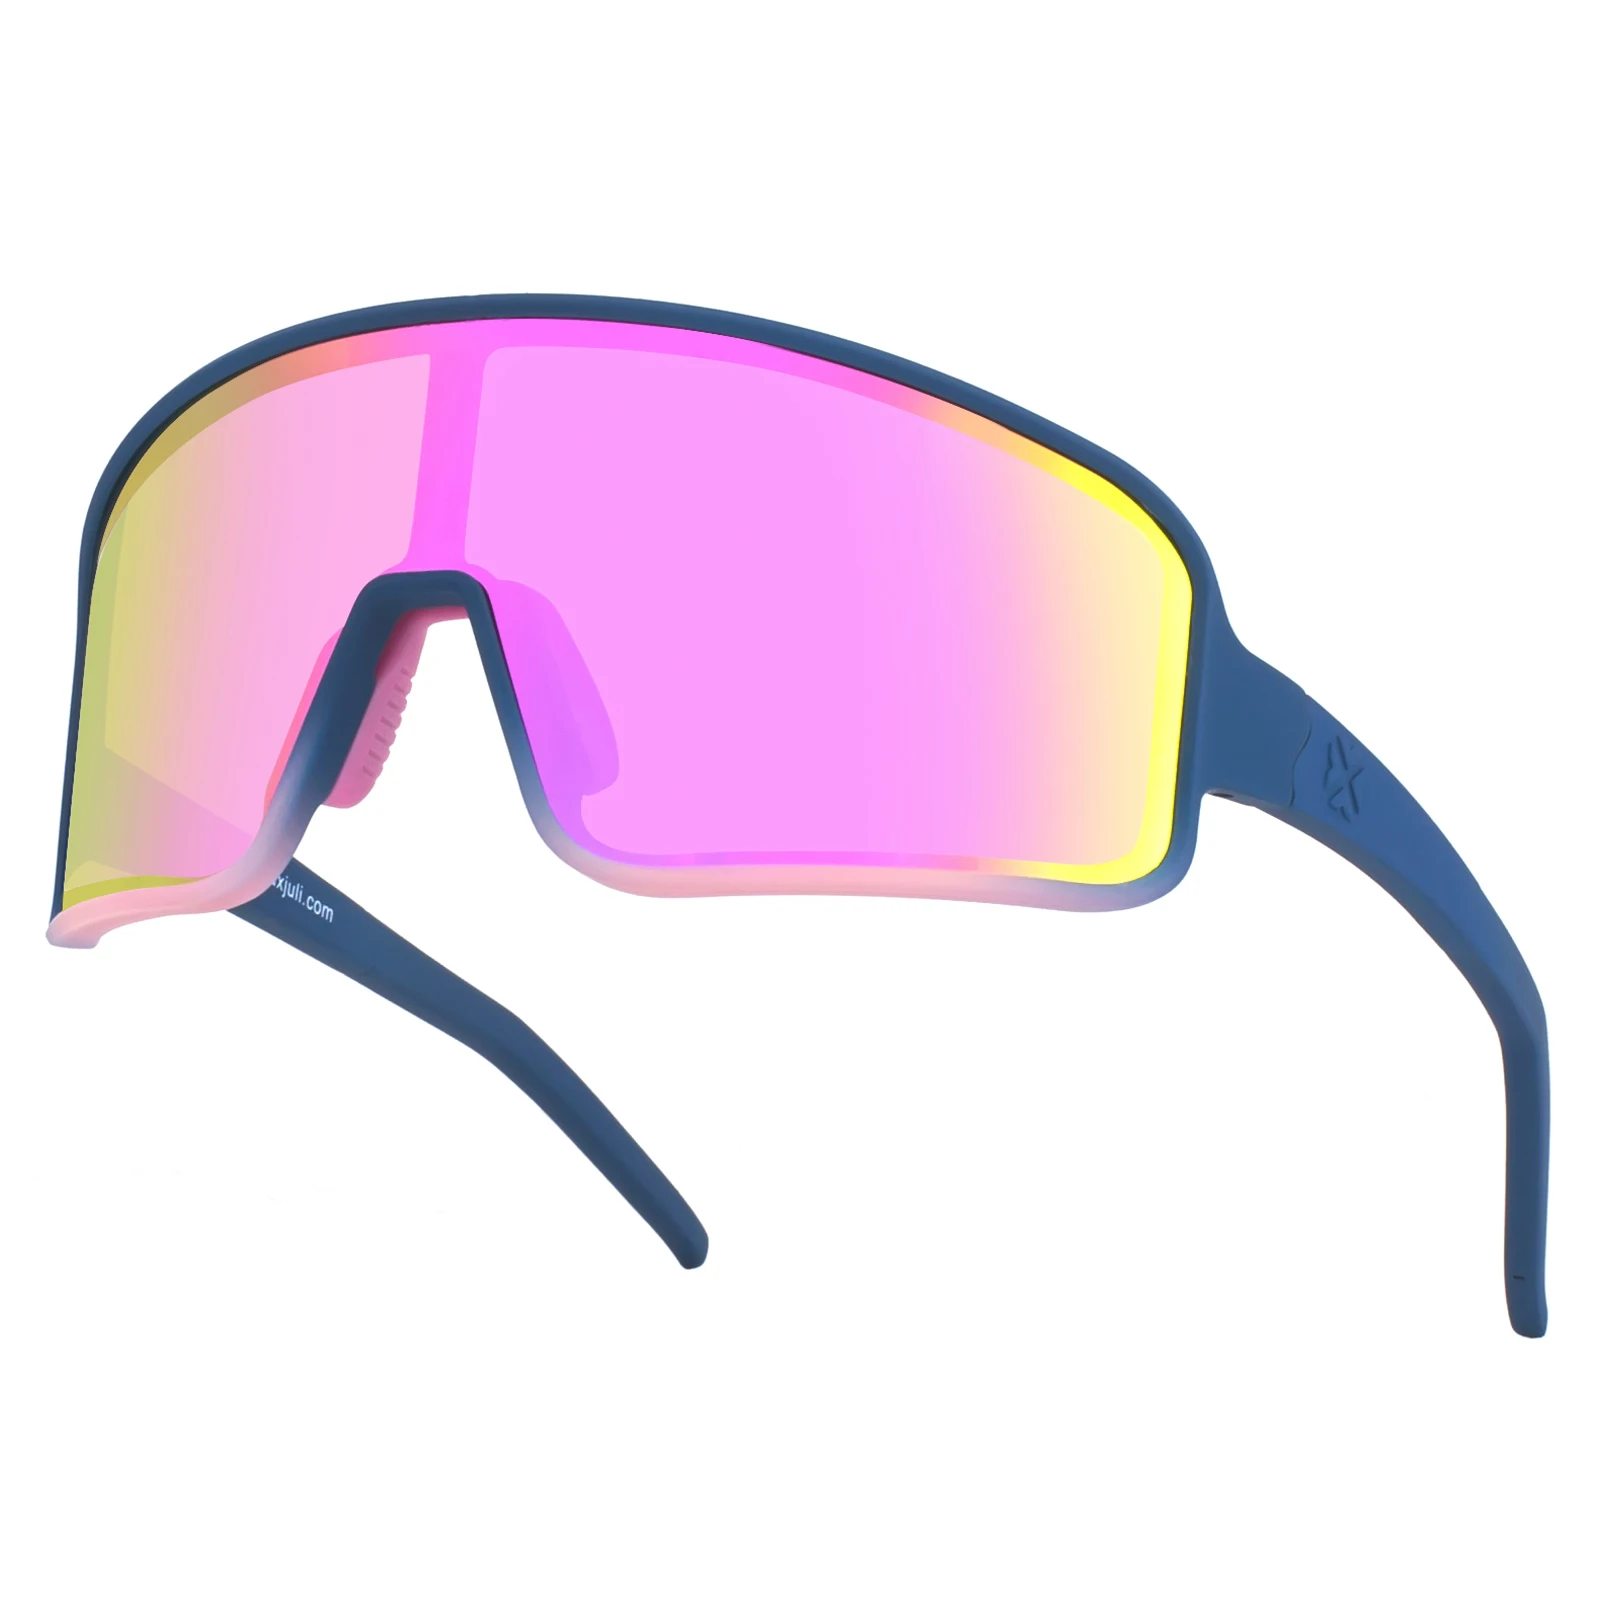 MAXJULI الدراجات نظارات نظارات شمسية رياضية قطبية للرجال النساء للقيادة الصيد البيسبول تشغيل الجبلية الرياضة في الهواء الطلق 8121